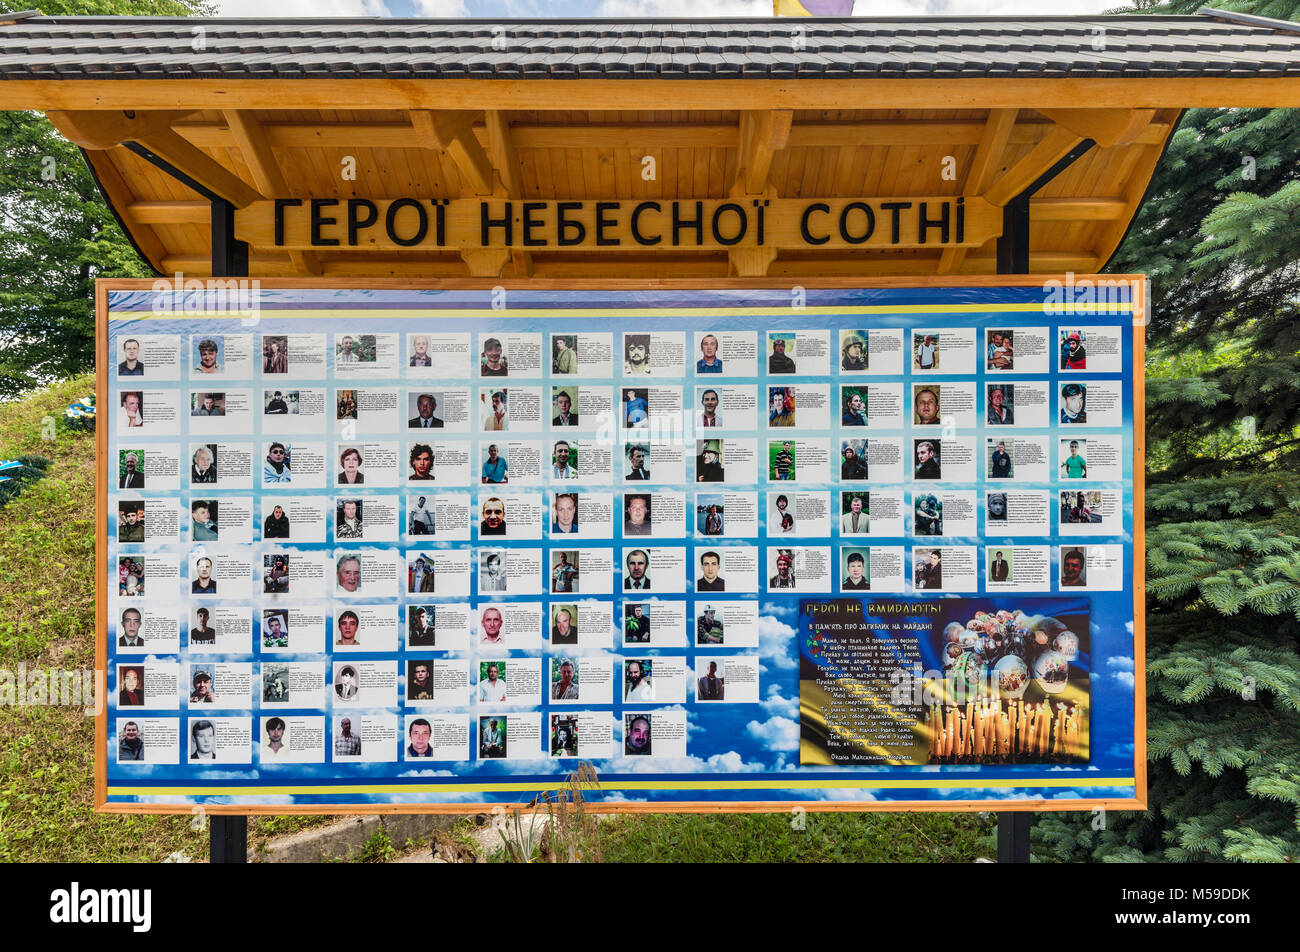 Sotnya bleu affichage commémorant les héros, personnes tuées au cours des manifestations de 2014 à Kiev, près de la ville de Kosiv, Prykarpattia Région, l'Ukraine Banque D'Images